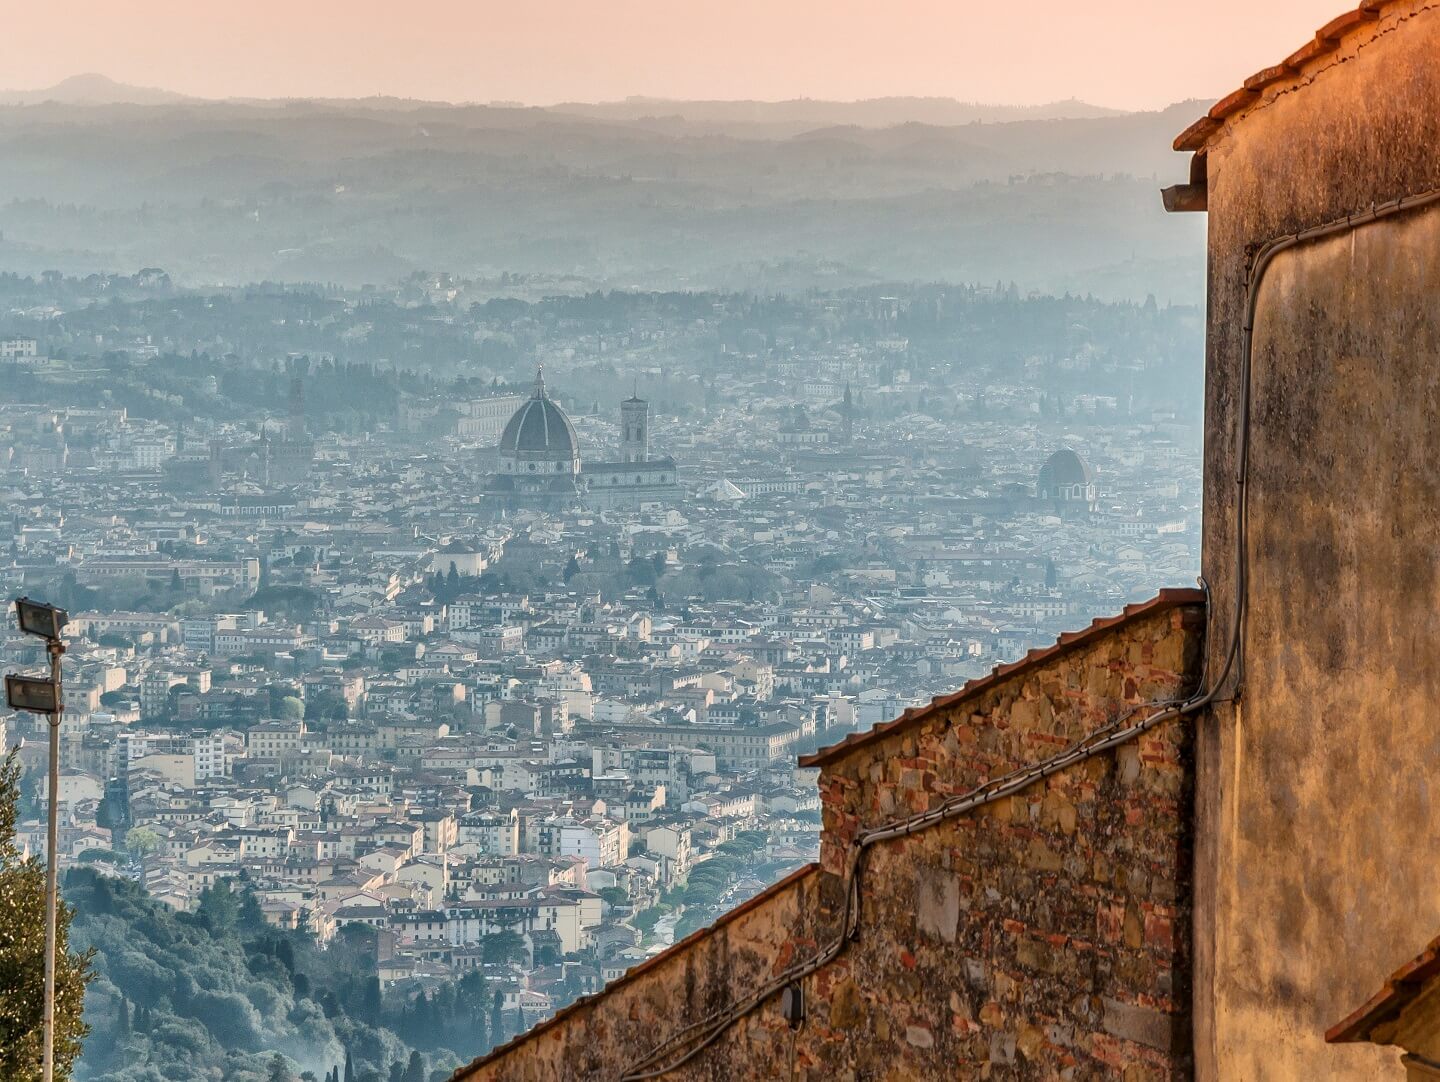 Gita fuori porta vicino a Firenze: esperienze uniche